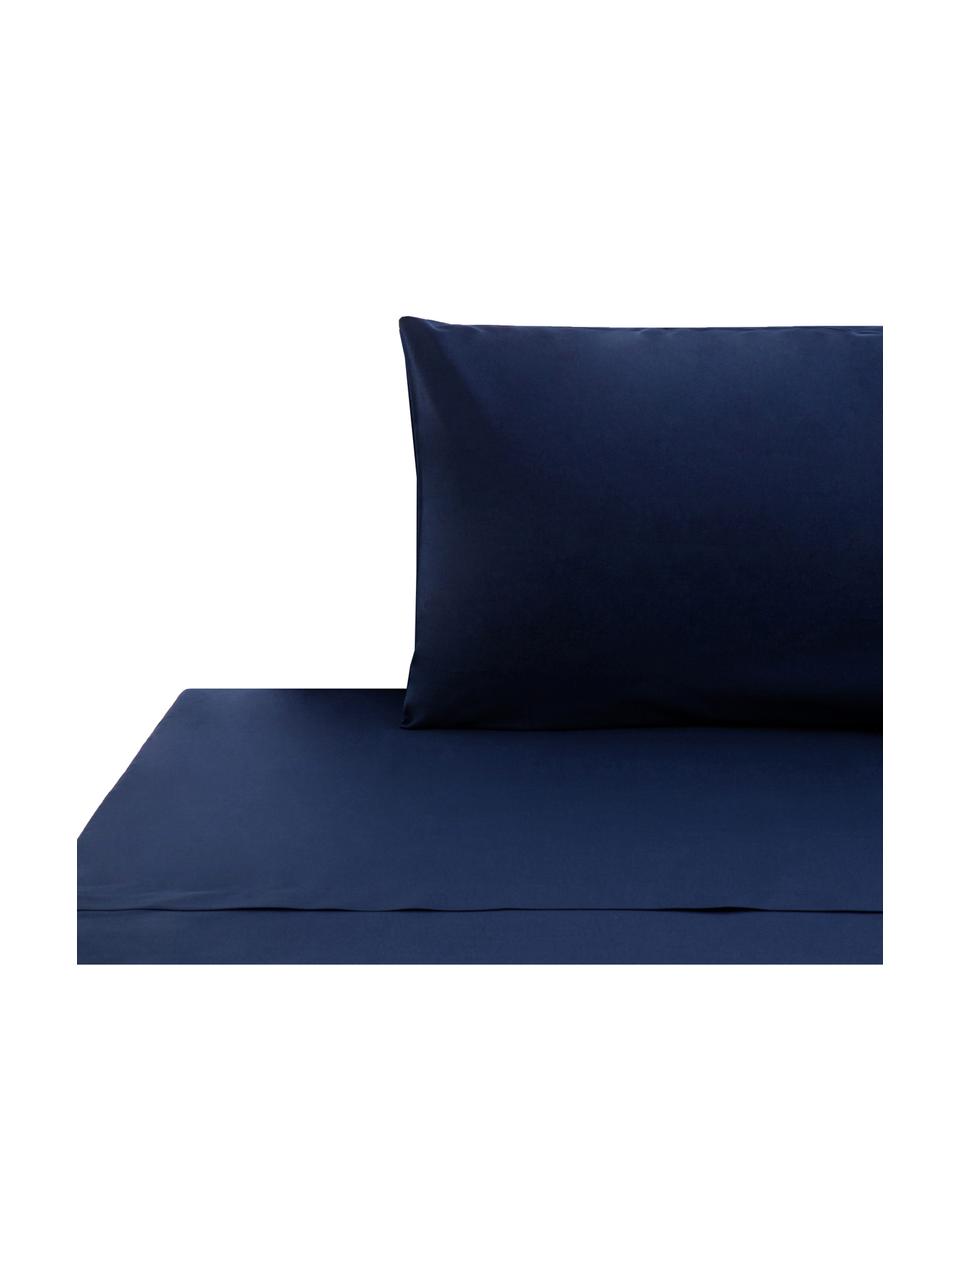 Set lenzuola blu scuro in cotone ranforce Lenare, Fronte e retro: blu scuro, 150 x 290 cm + 1 federa 50 x 80 cm